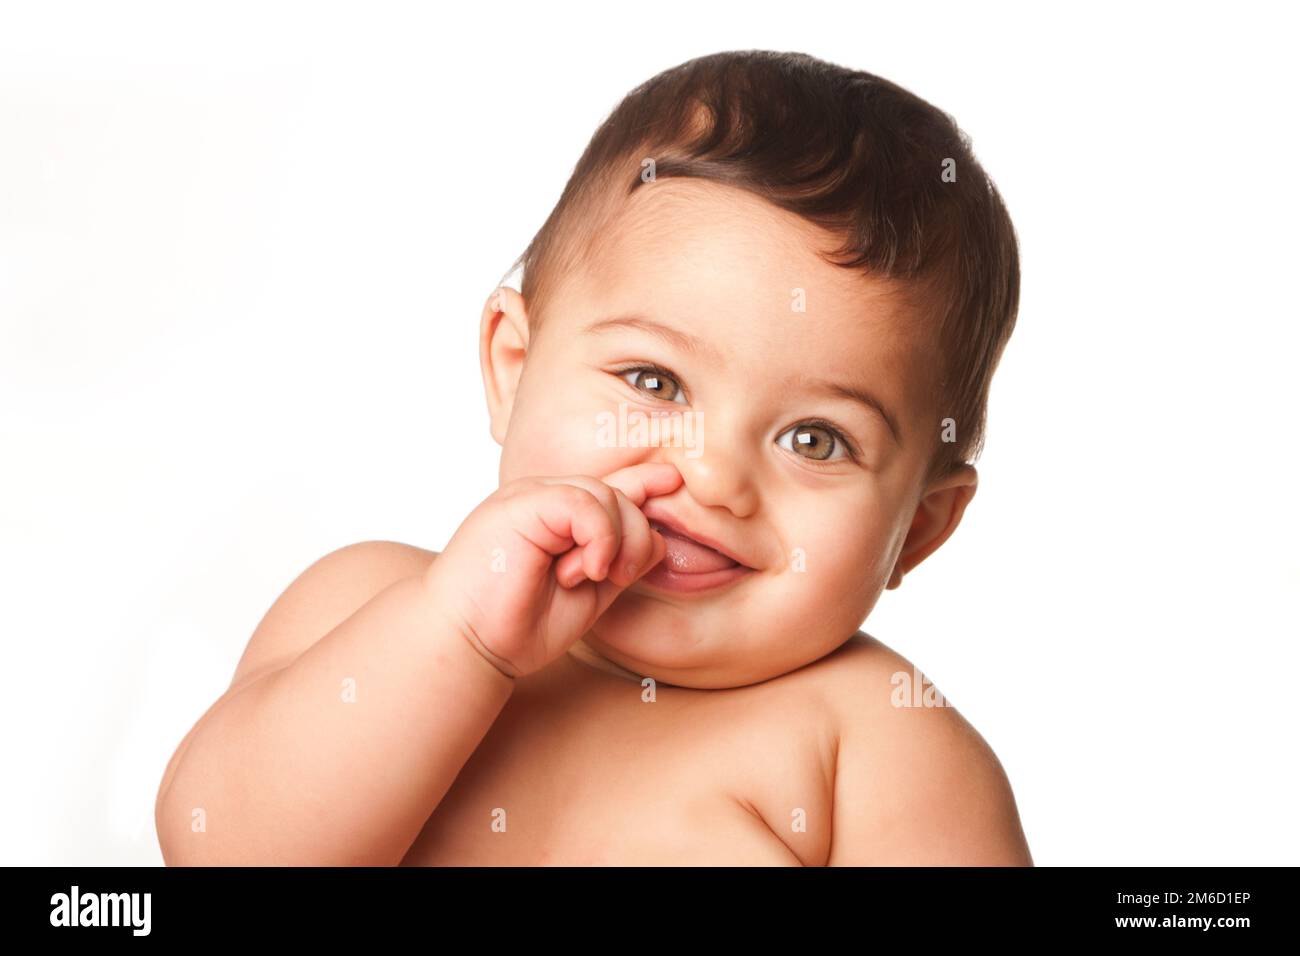 Cute bambino infante con grandi occhi verdi che picking naso su bianco Foto Stock